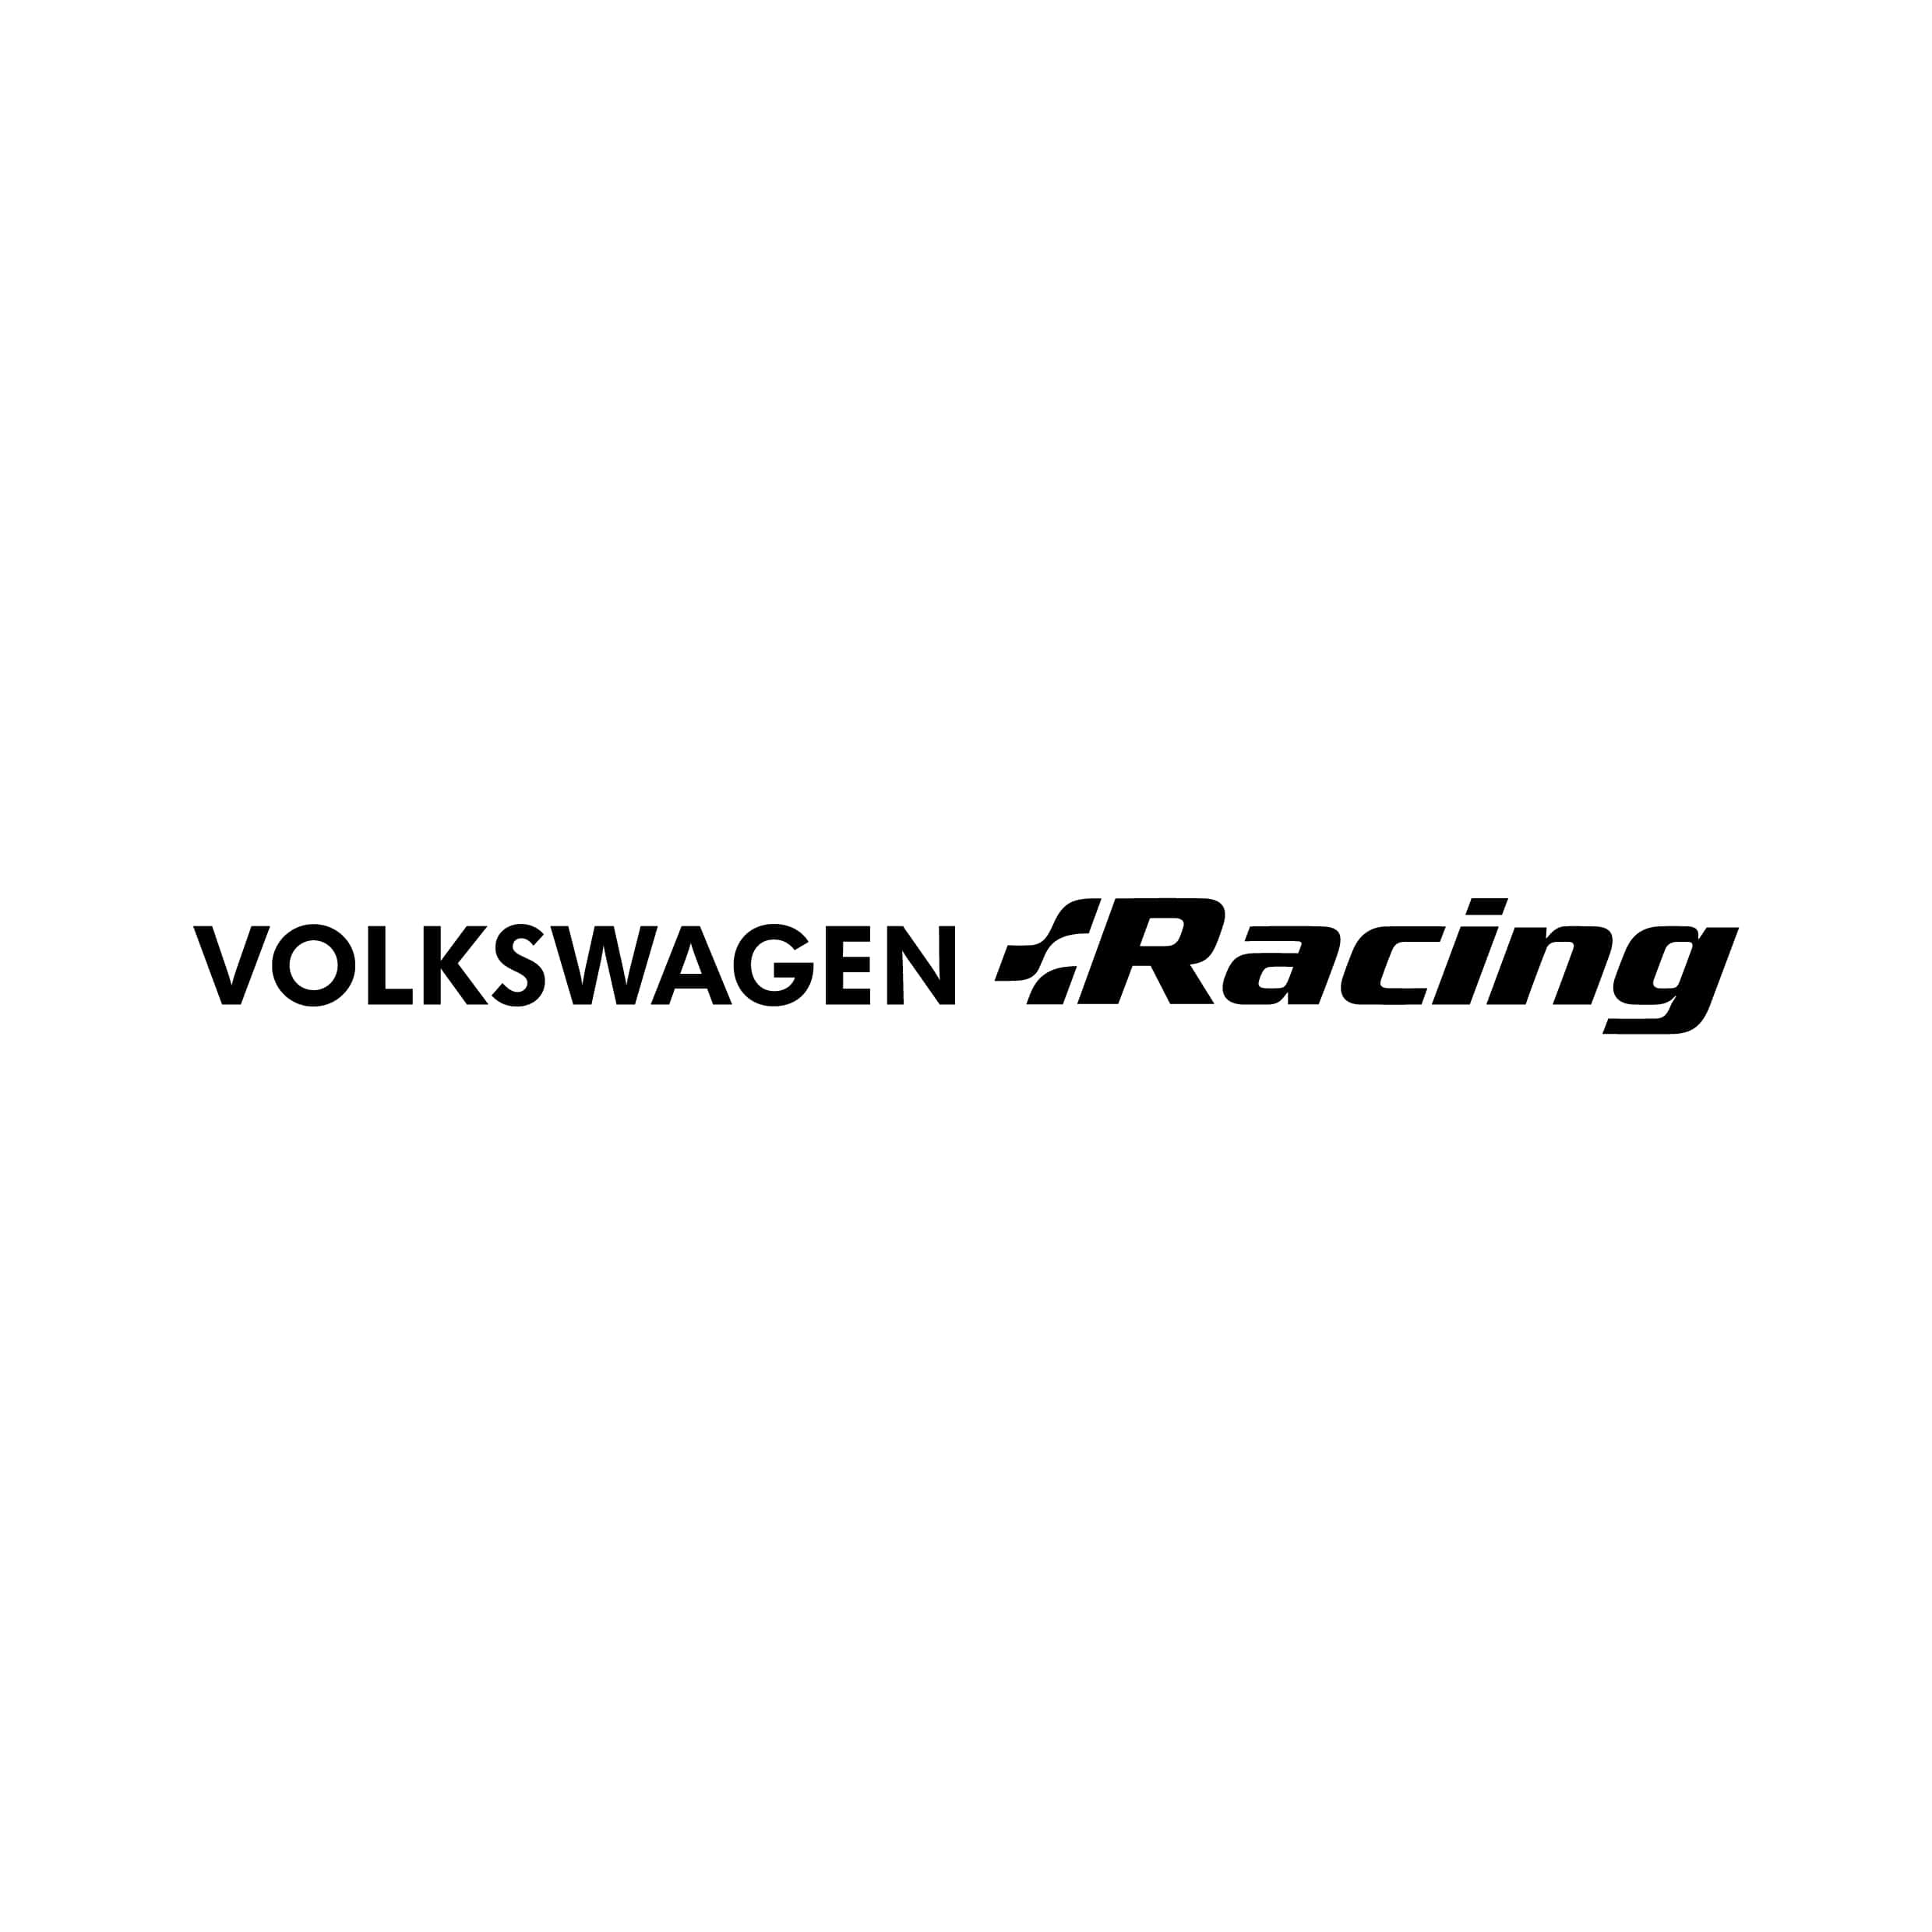 stickers-volkswagen-racing-ref11-autocollant-voiture-sticker-auto-autocollants-decals-sponsors-racing-tuning-sport-logo-min